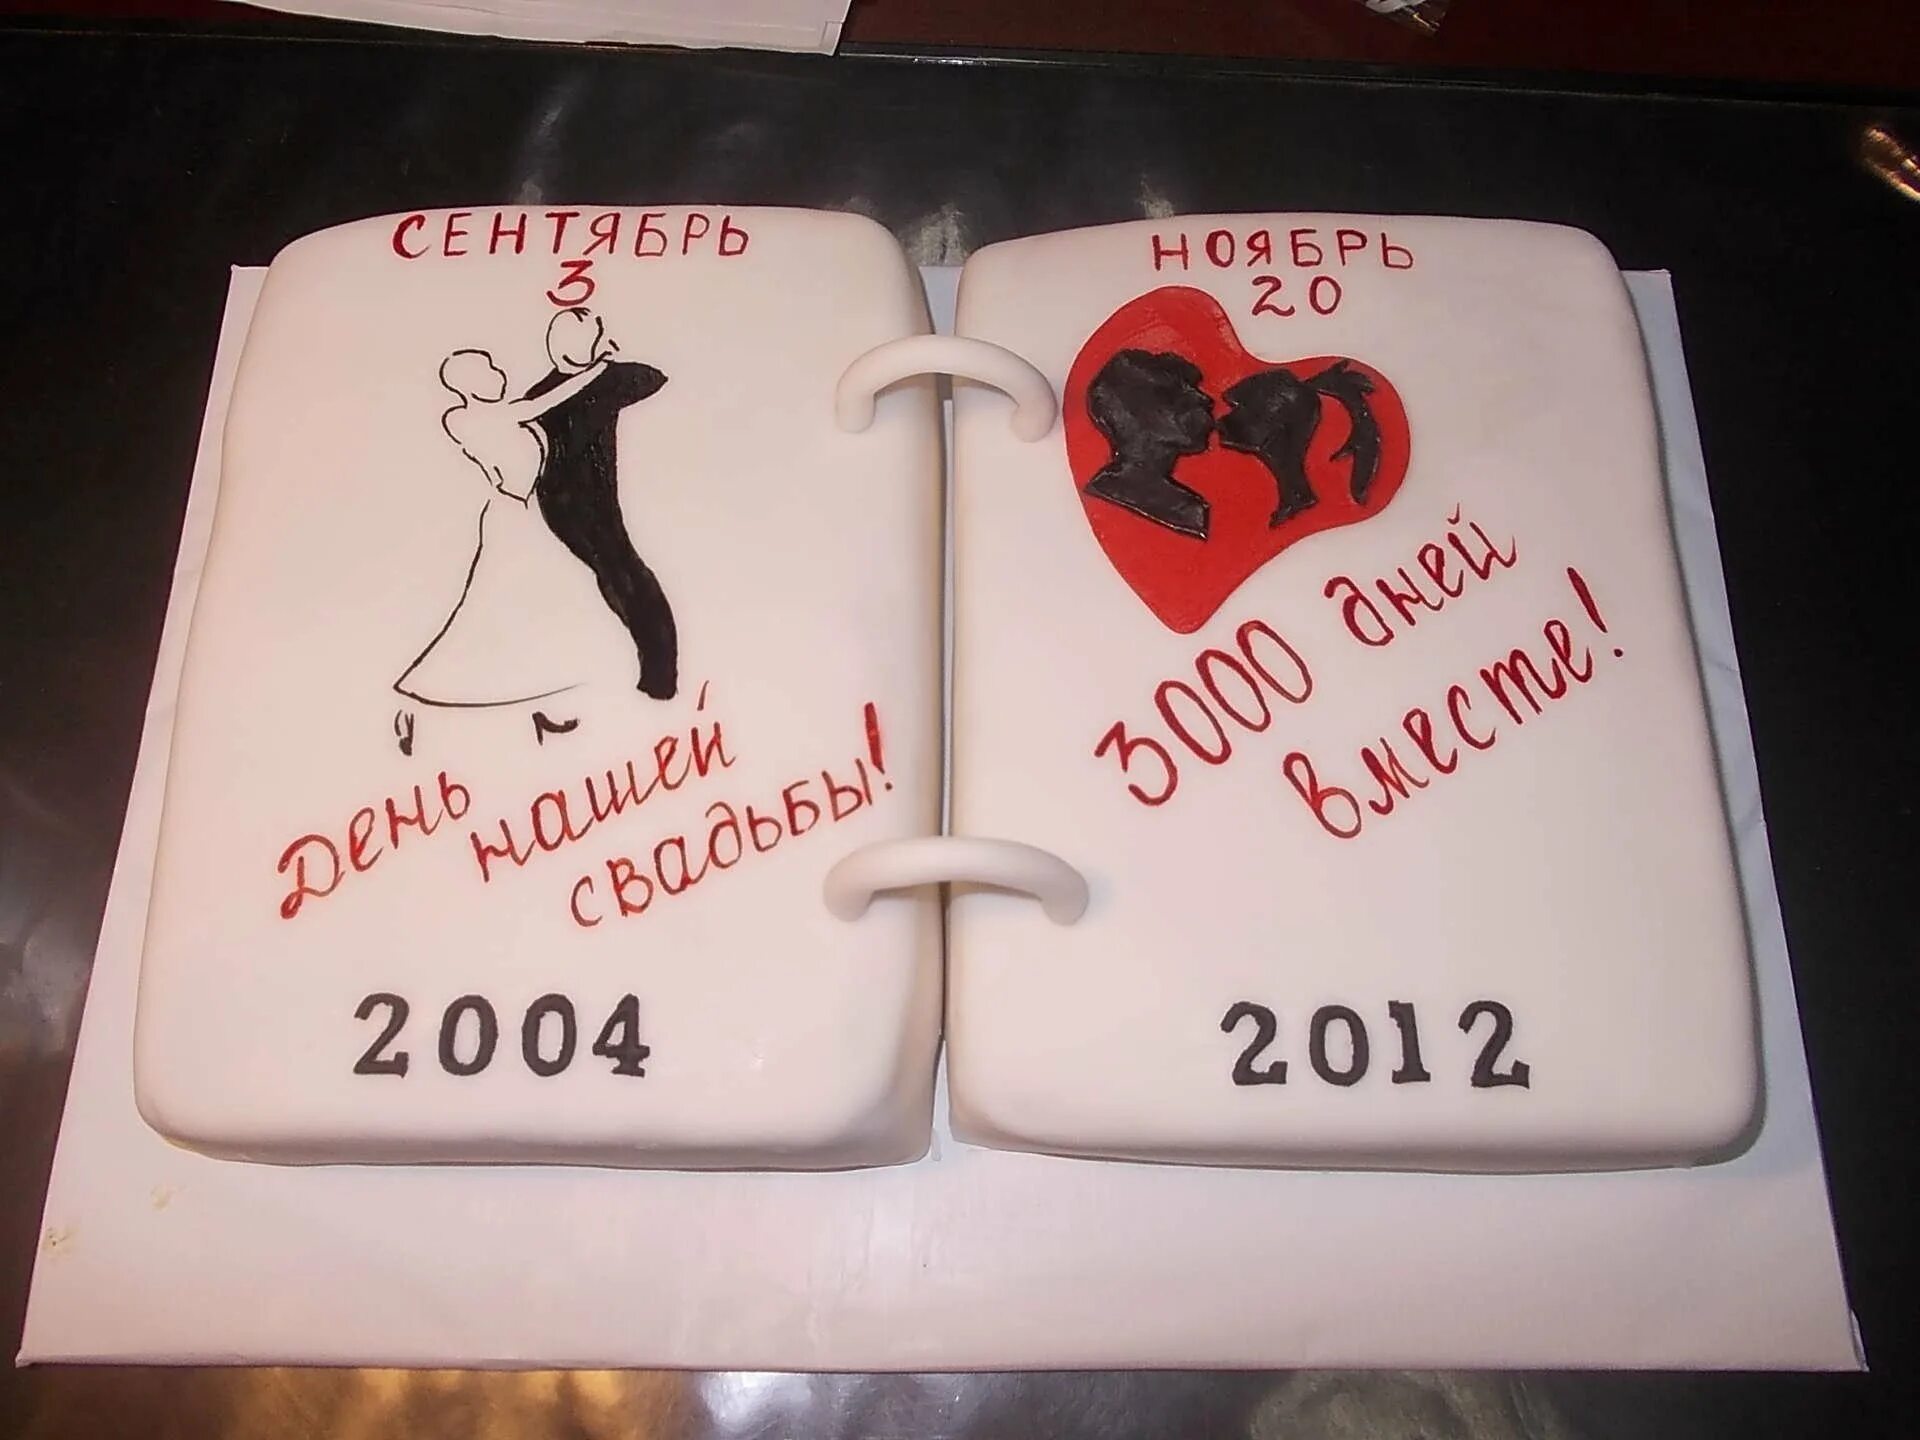 Прикольные надписи на годовщину. Торт на годовщину смешной. Смешные надписи на торт. Смешной торт на годовщину свадьбы. Торт на годовщину свадьбы прикольный.